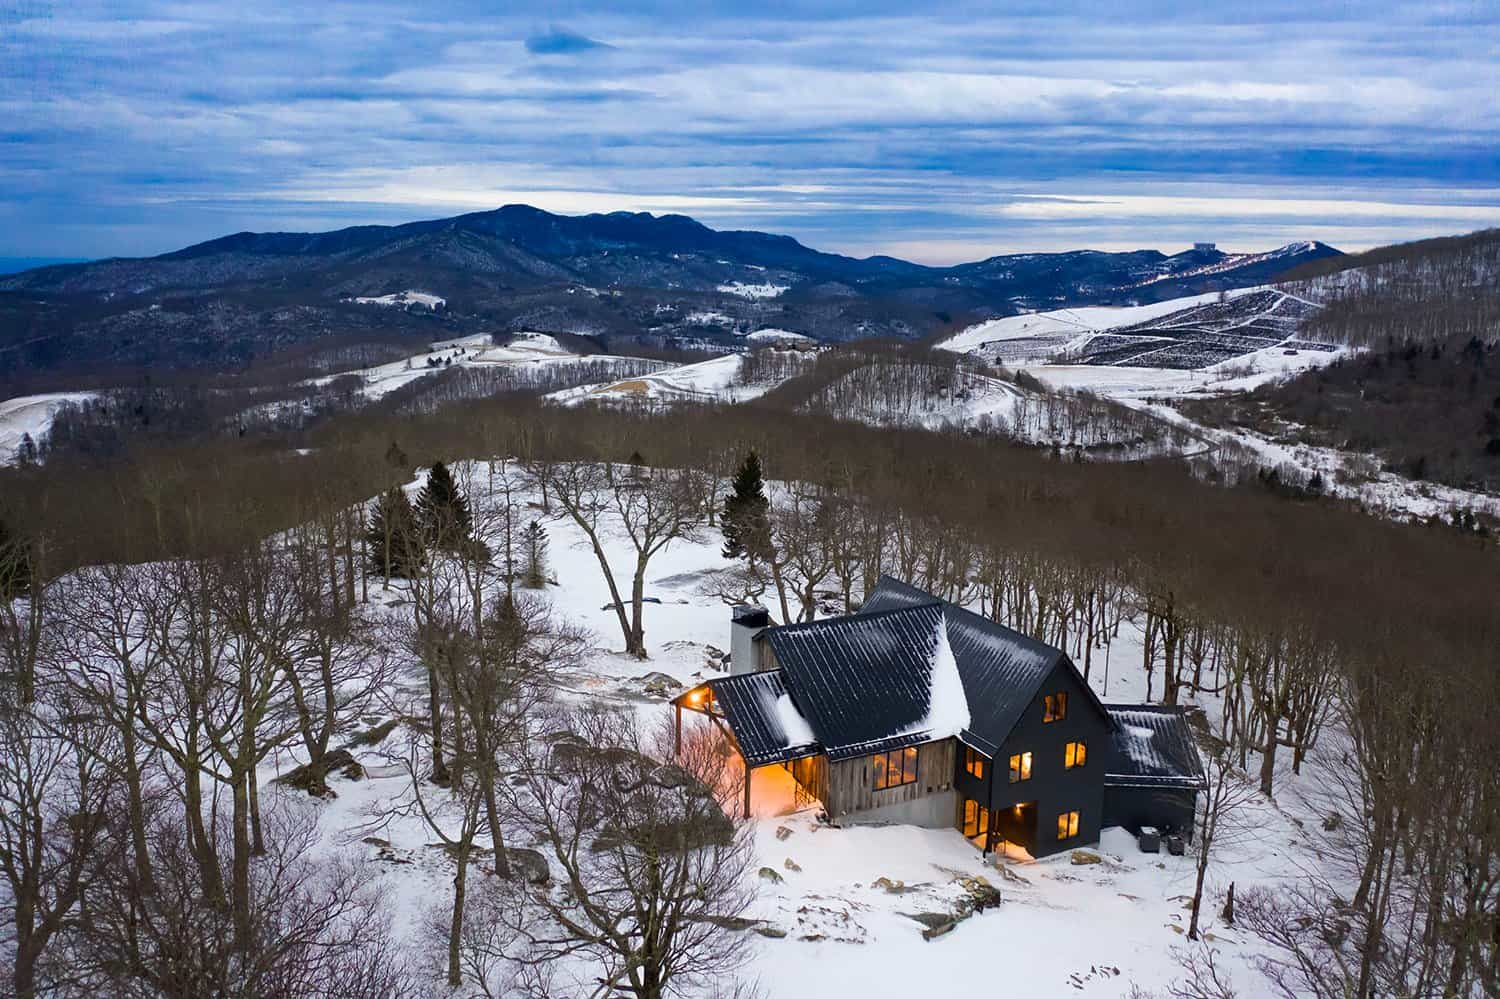 contemporary-mountain-home-exterior-with-snow